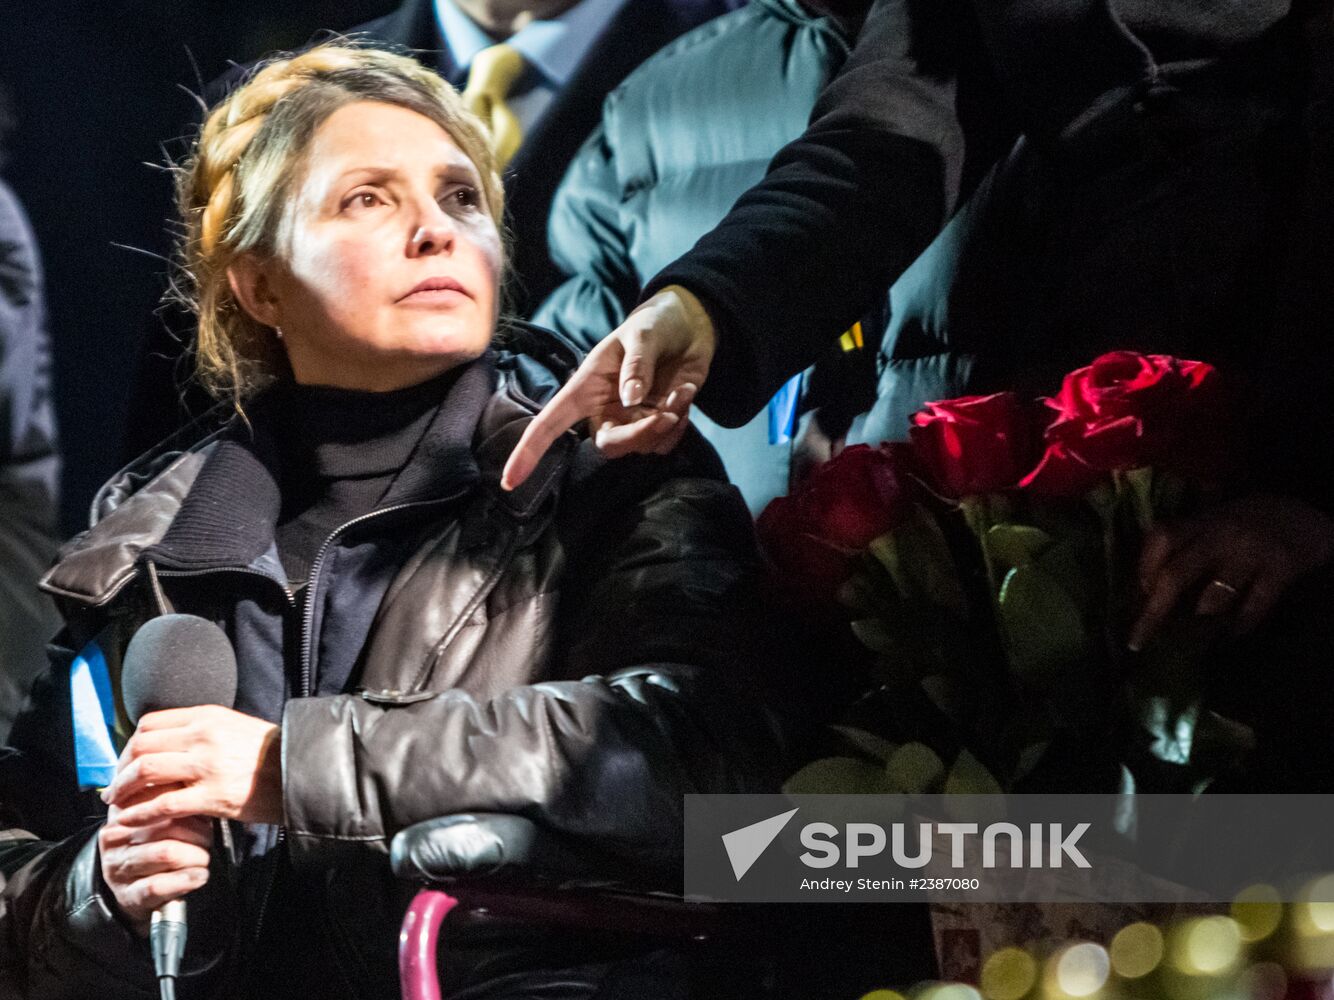 Yulia Tymoshenko arrives in Kiev